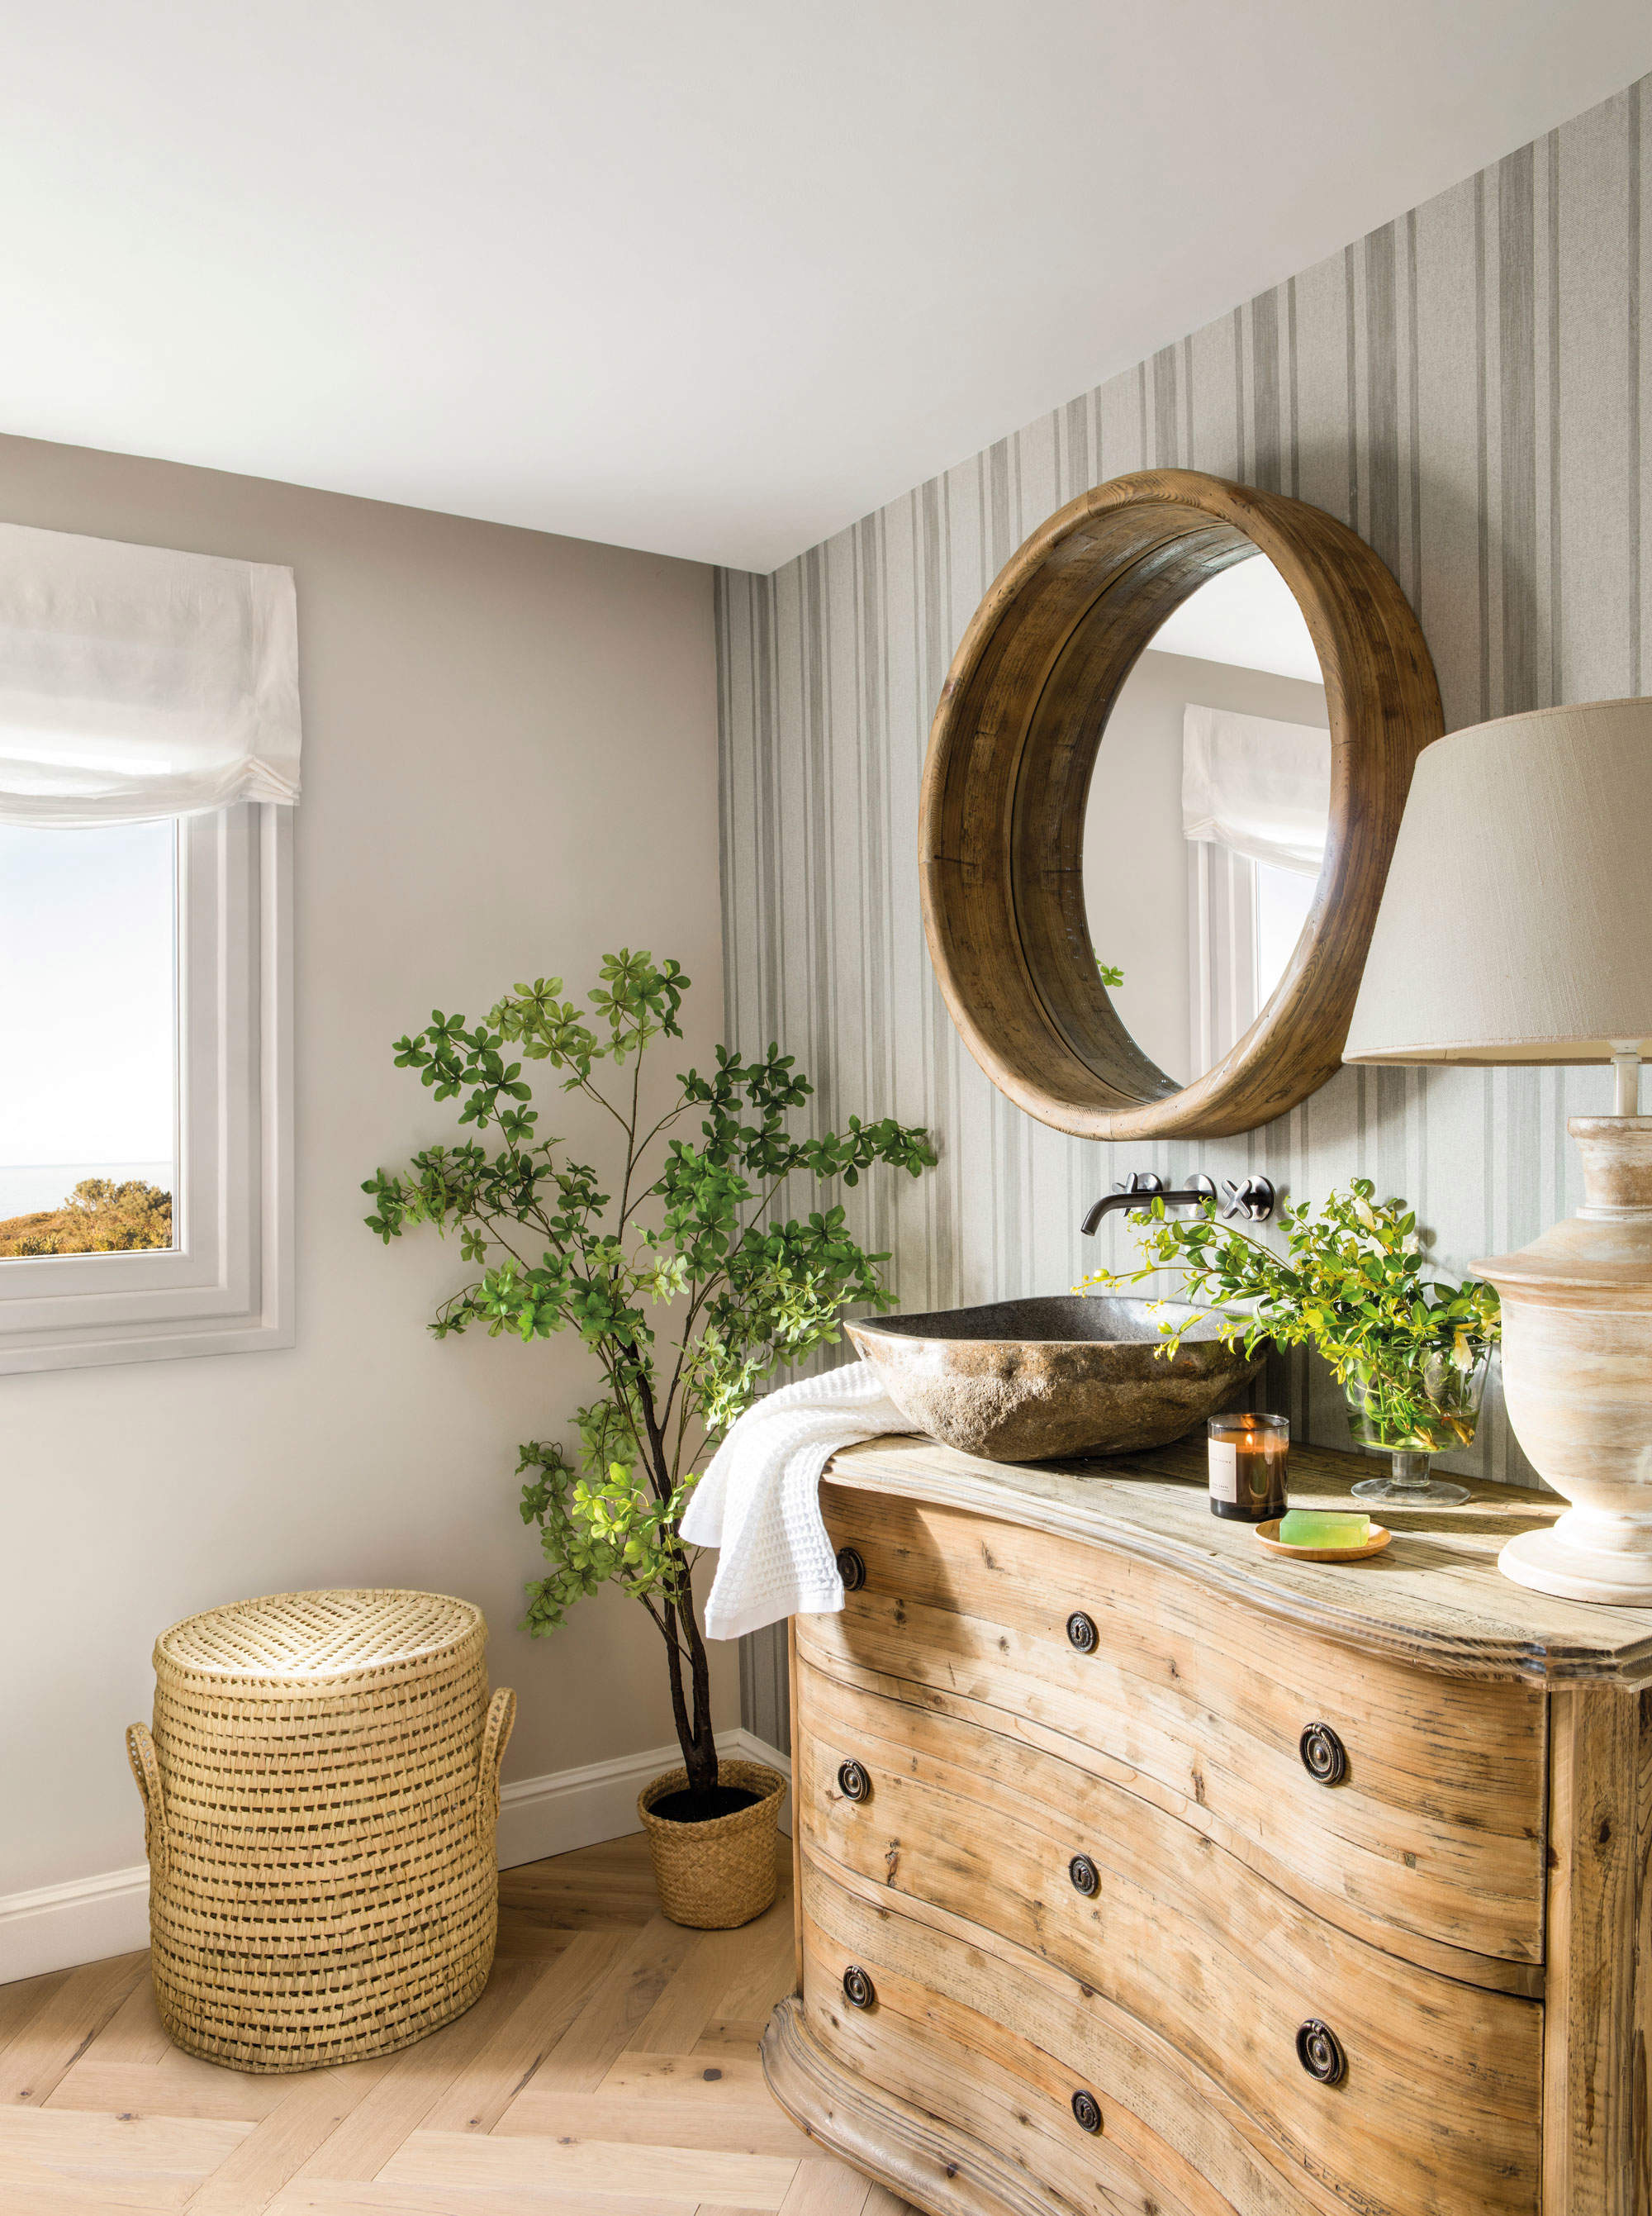 bano-de-estilo-rustico-con-mueble-de-madera-y-espejo-redondo-00557270